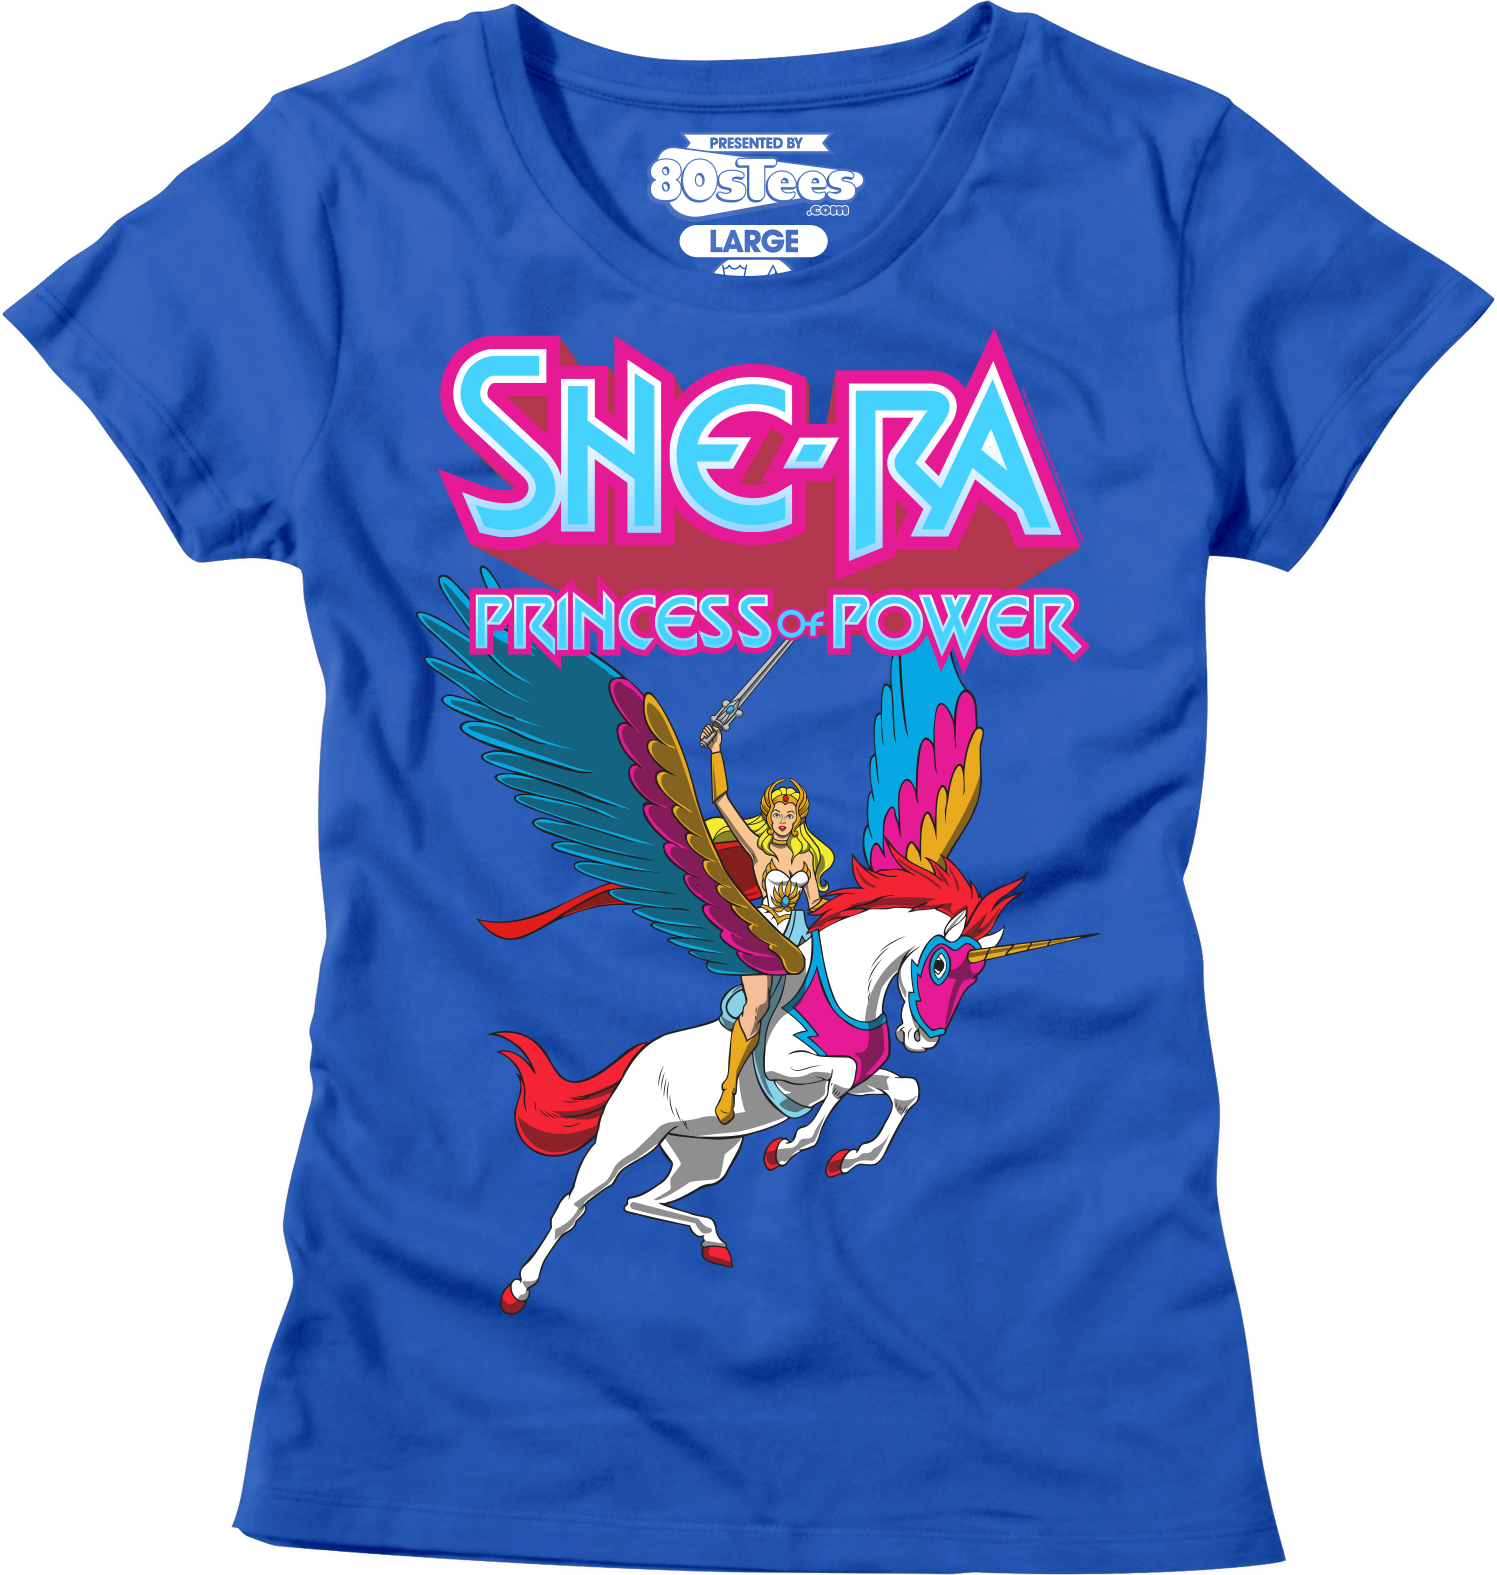 She-Ra Shirt